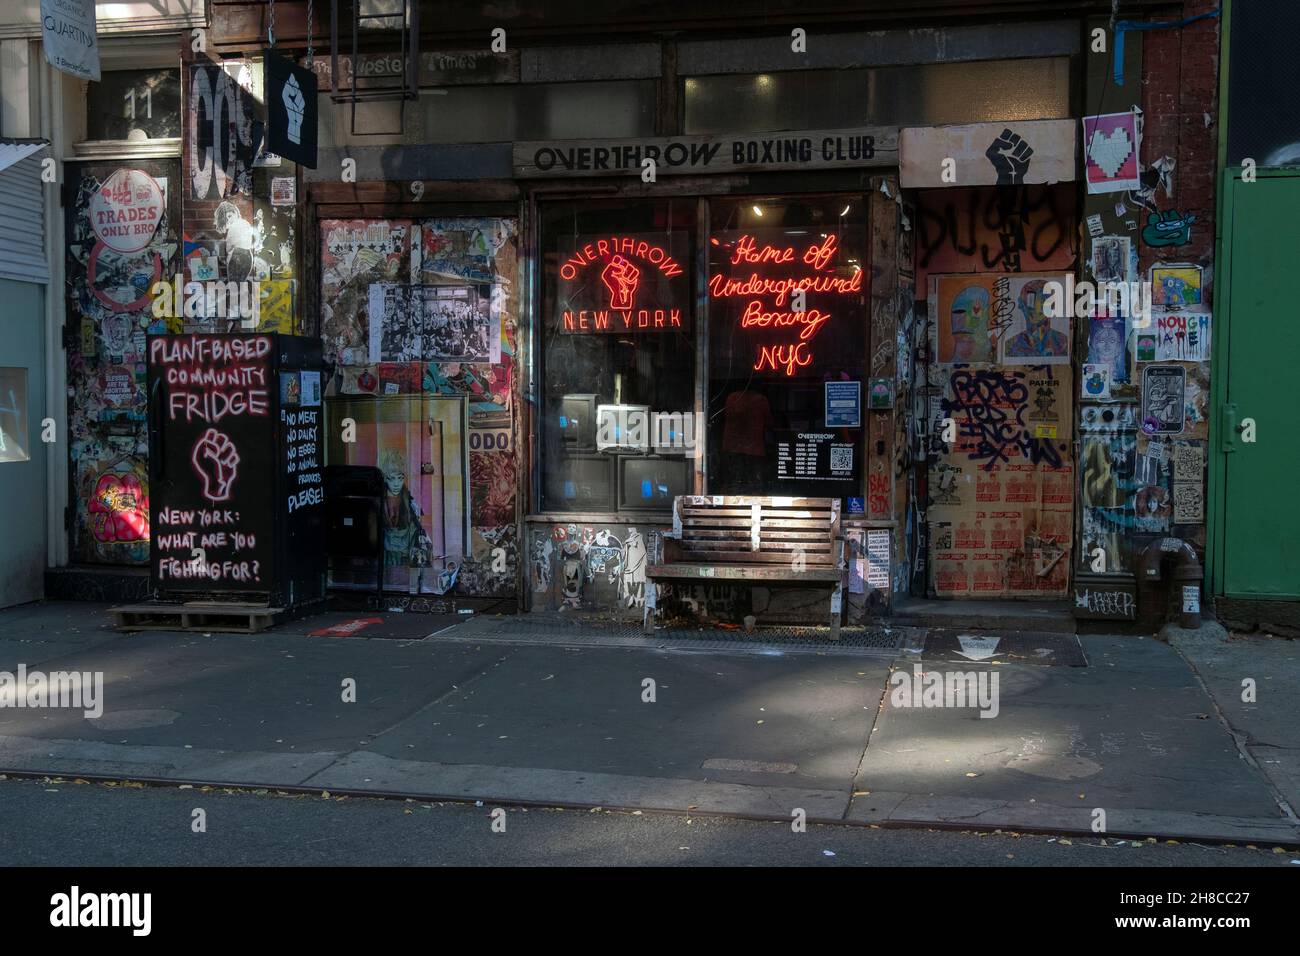 STADTLANDSCHAFT. Ein Gemeinschaftskühlschrank, unterirdische Boxen, Graffiti, Aufkleber und Tags auf der Bleecker Street in Downtown manhattan, New York City. Stockfoto